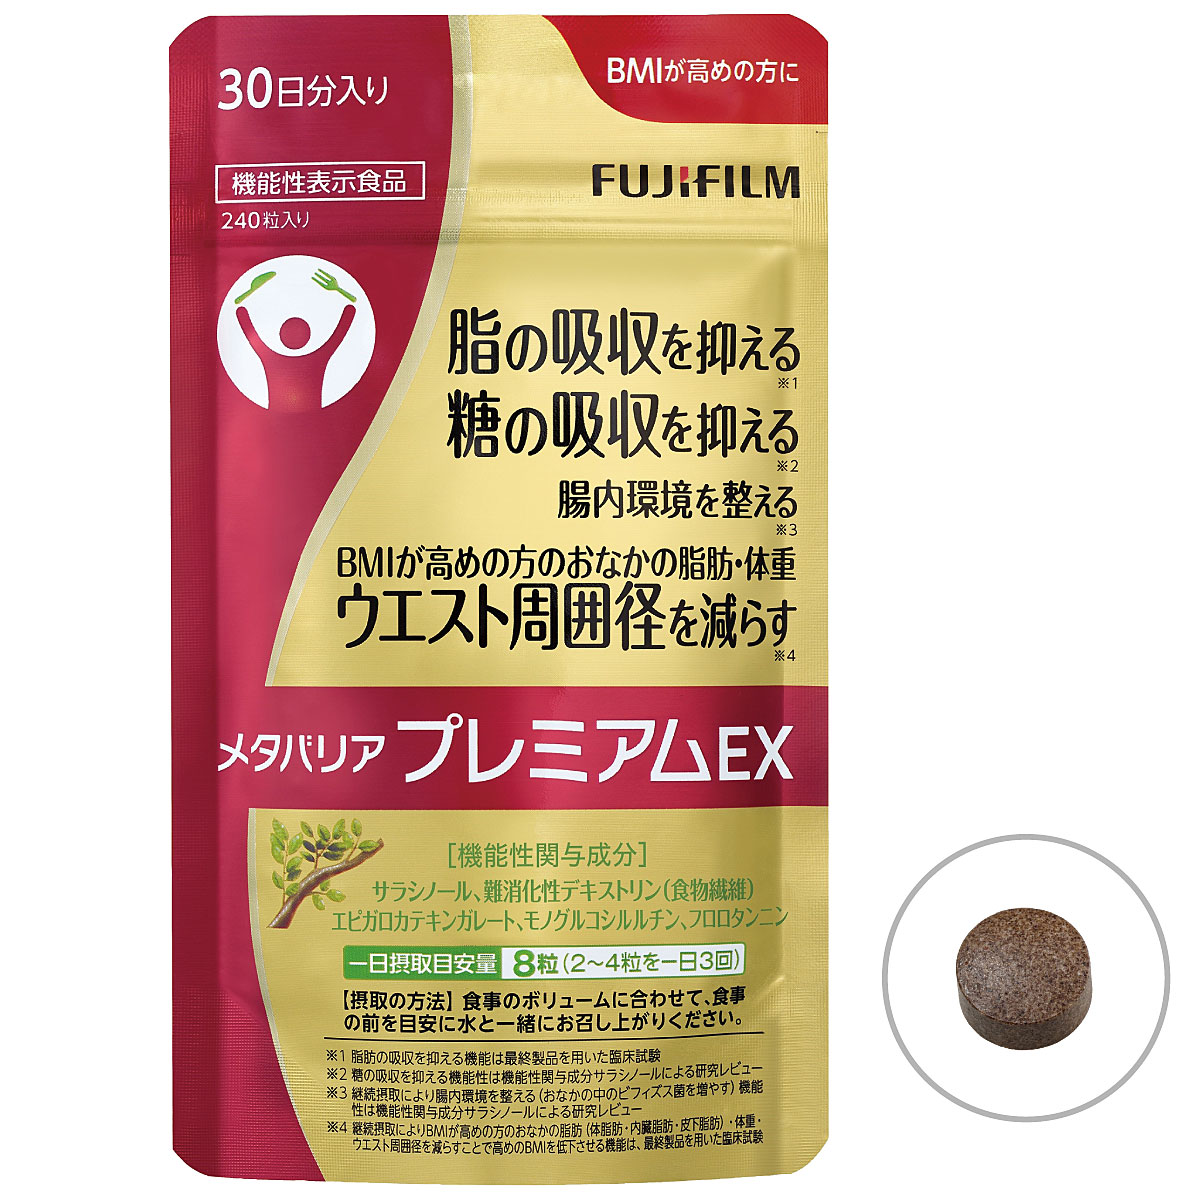 富士フイルム メタバリアプレミアムEX - 美容・健康商品の通販なら ...